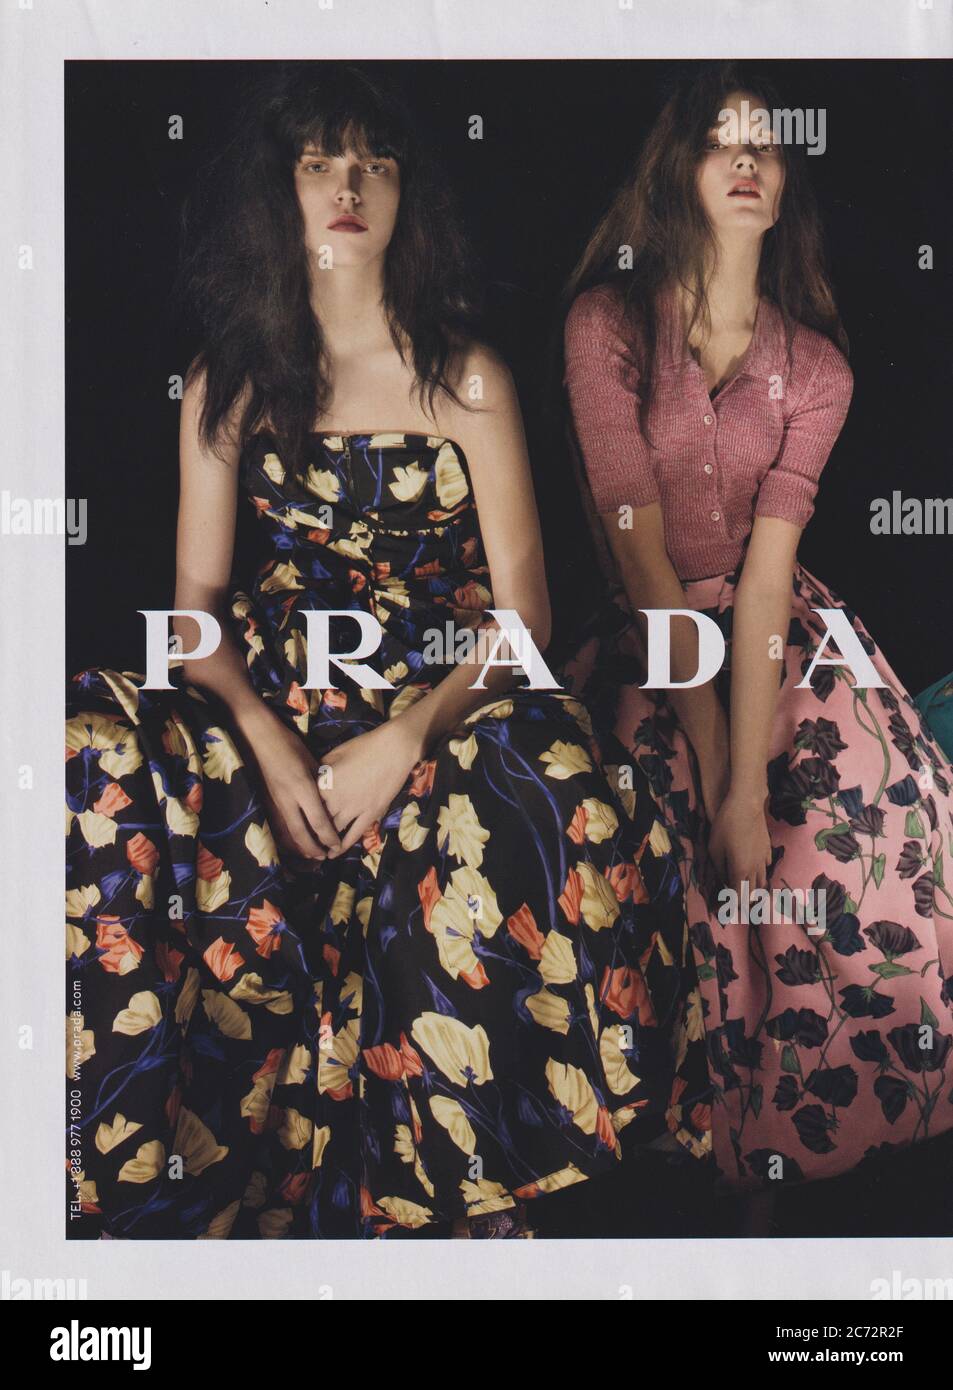 Plakat Werbung PRADA Modehaus in Papier Magazin von 2007 Jahr, Anzeige, kreative PRADA Anzeige von 2000er Jahren Stockfoto